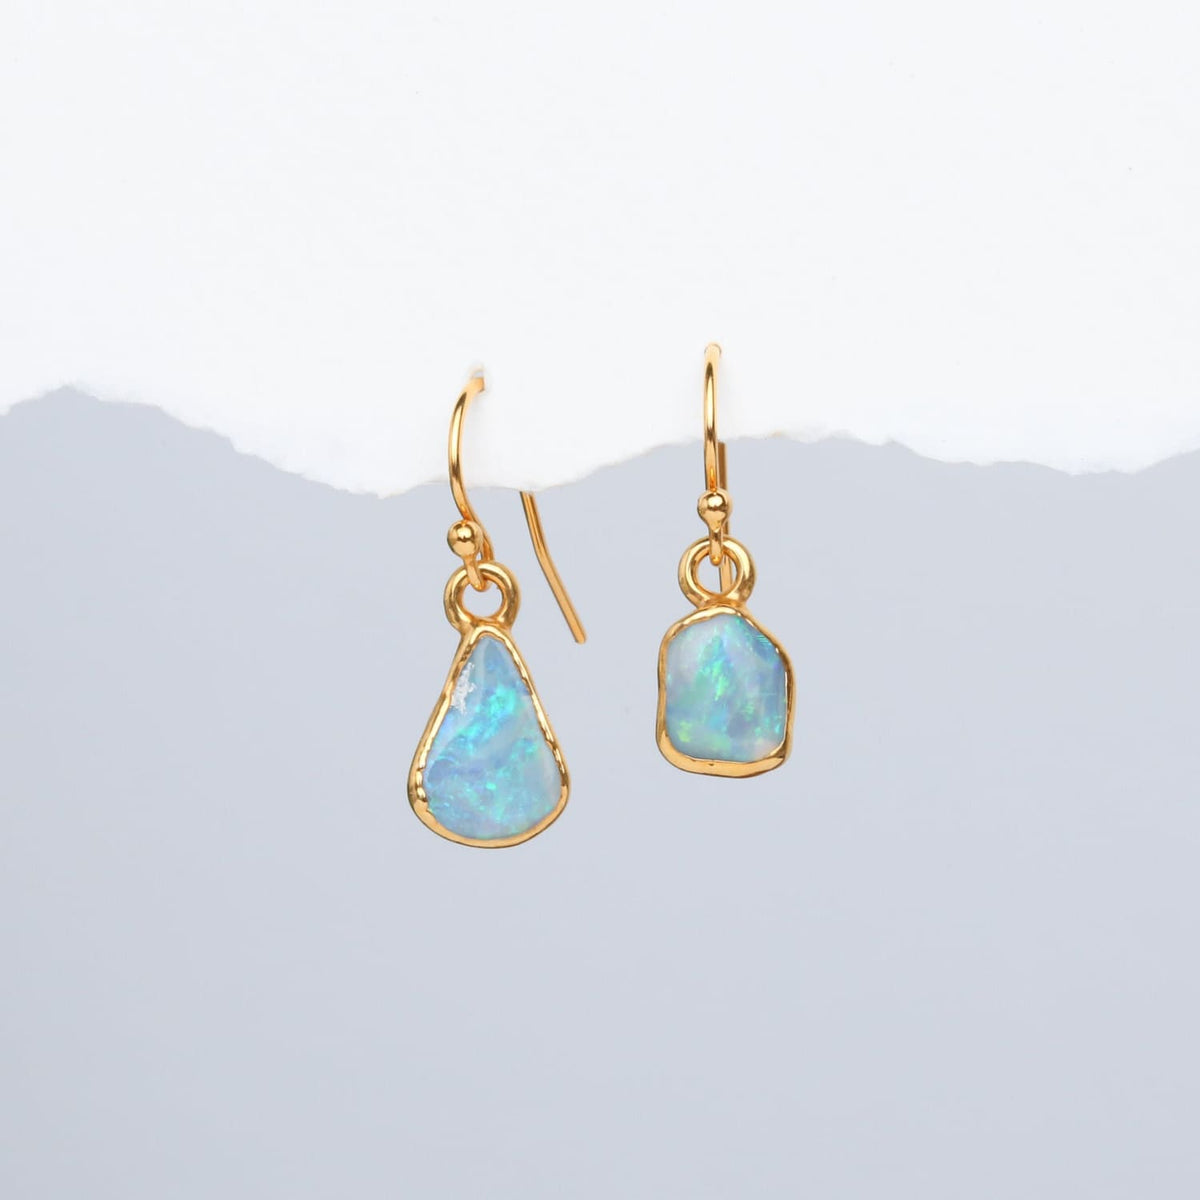 Mismatched Opal Earrings • Australian Fire Opals •